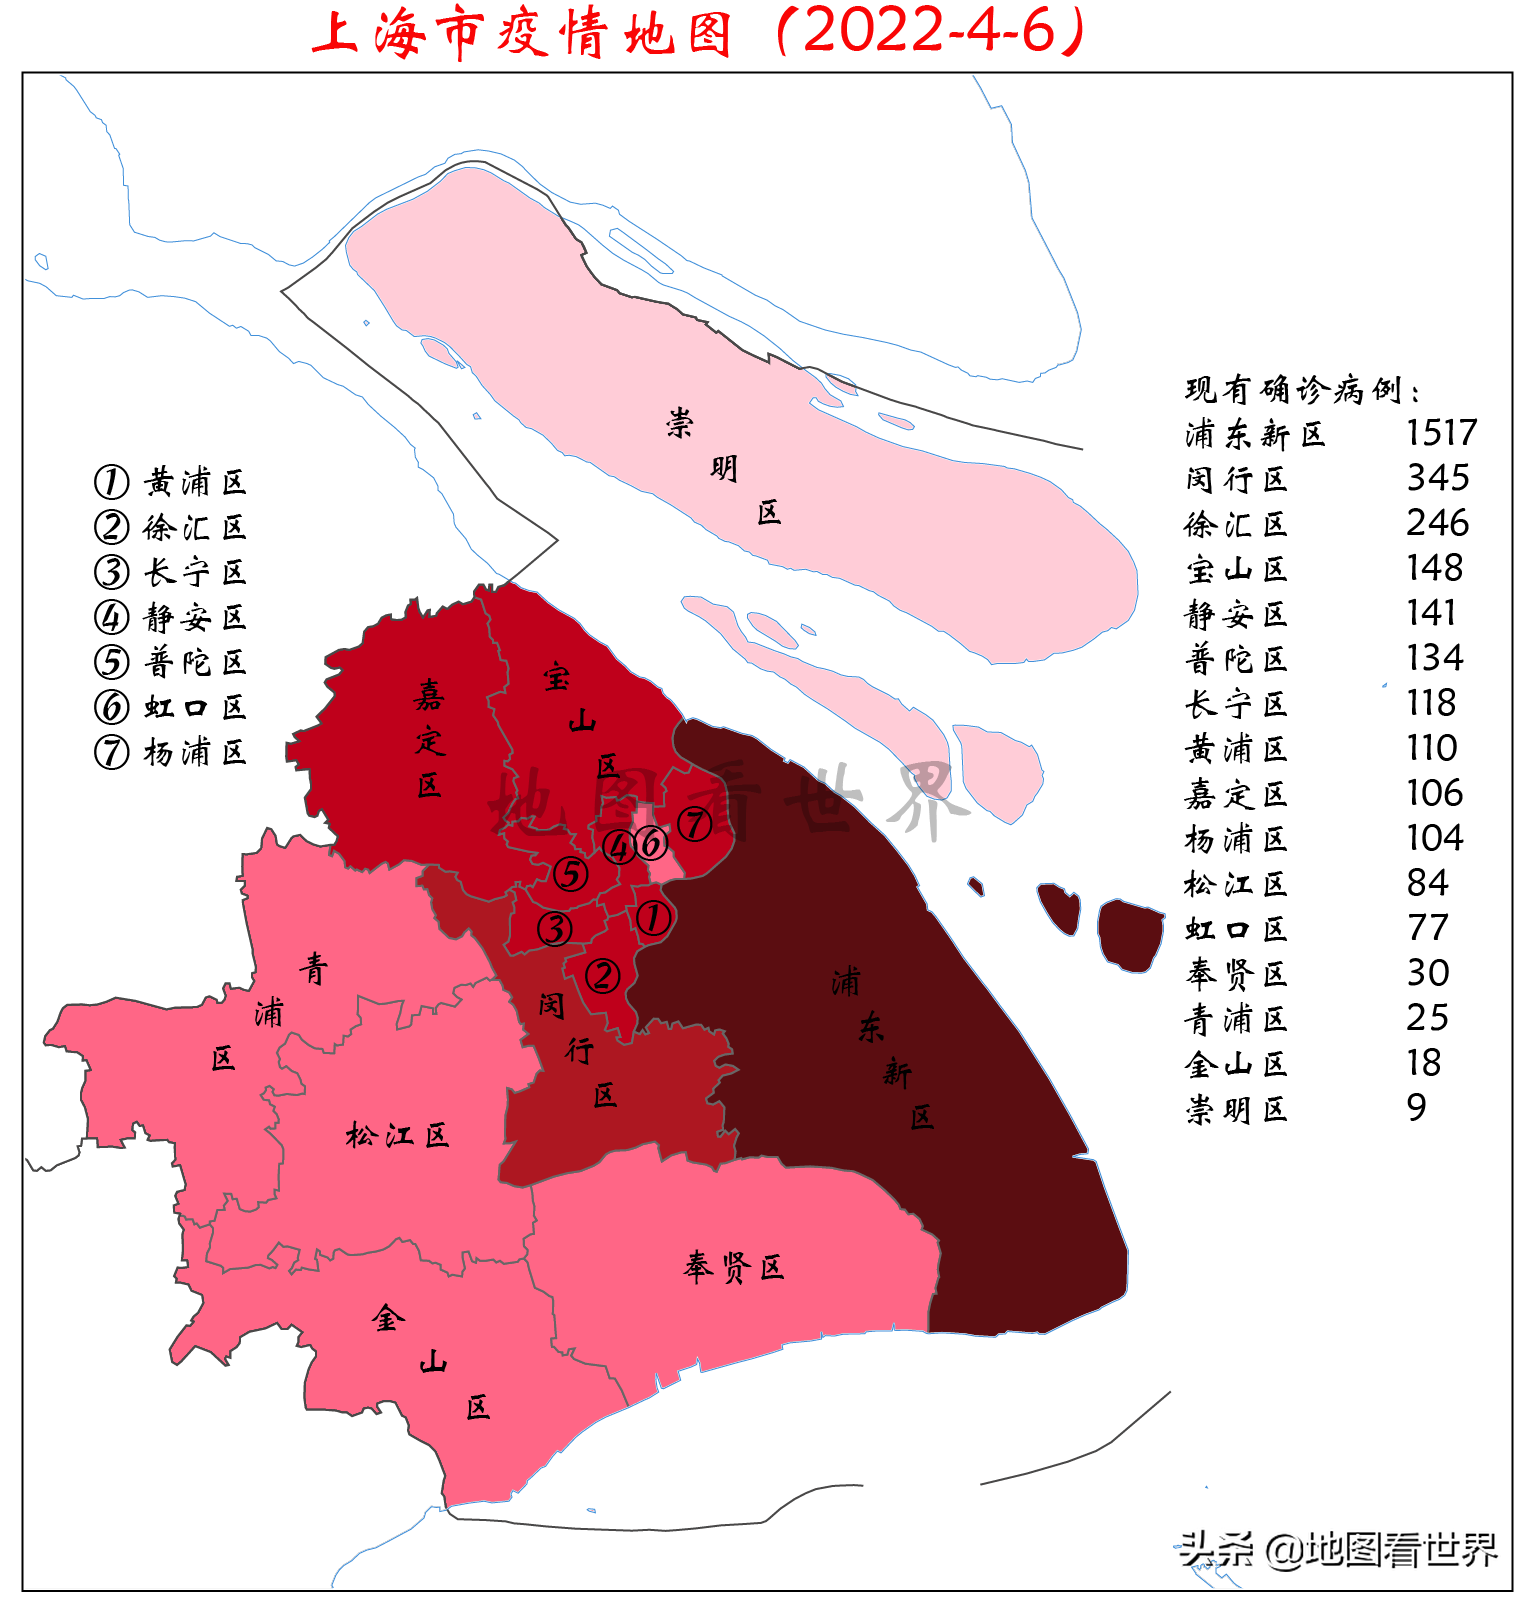 上海疫情地图上海风险地区最新划分上海新冠分布图实时